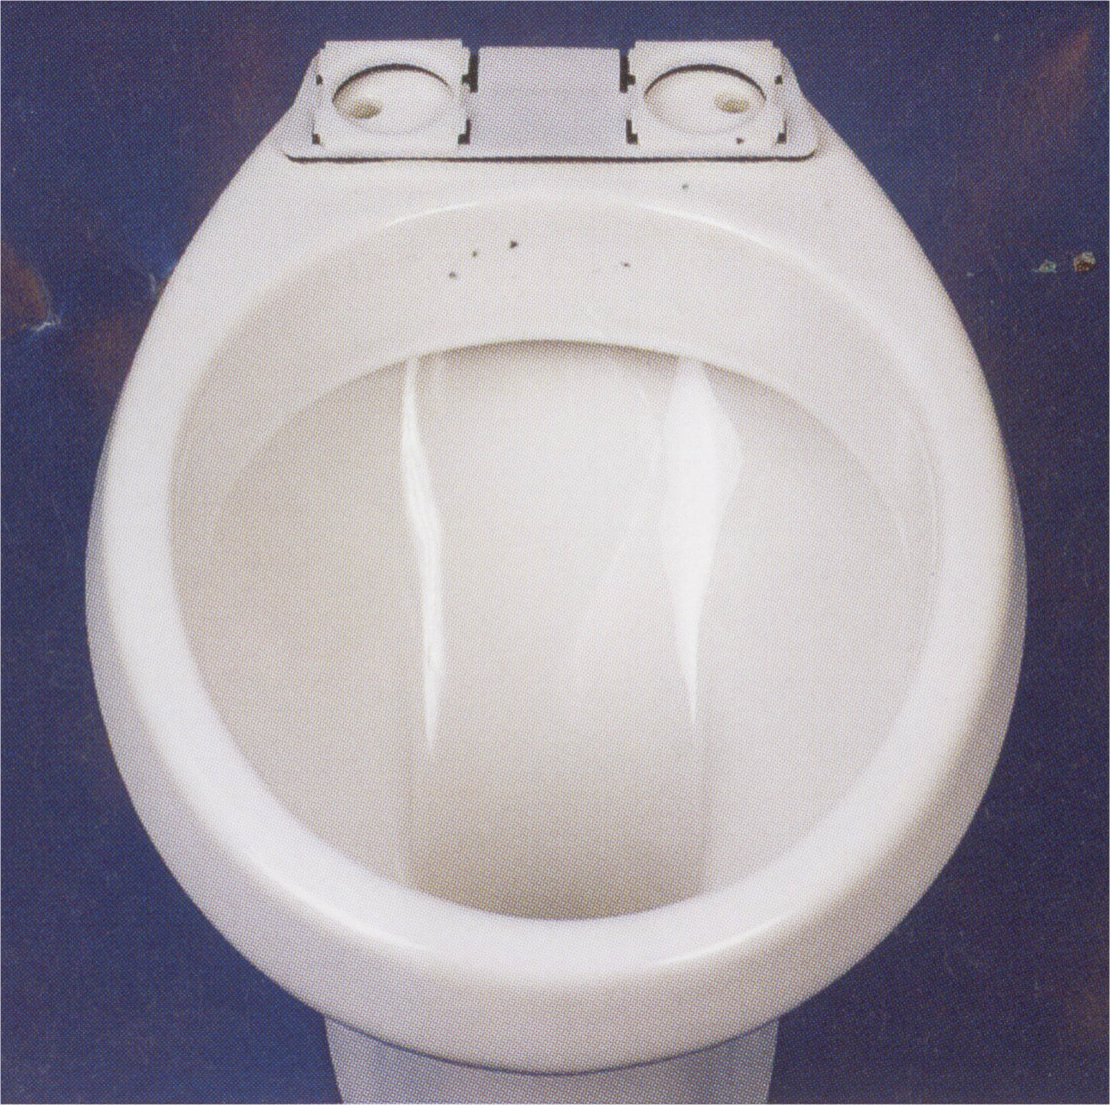 protection automatique de wc saniprotect